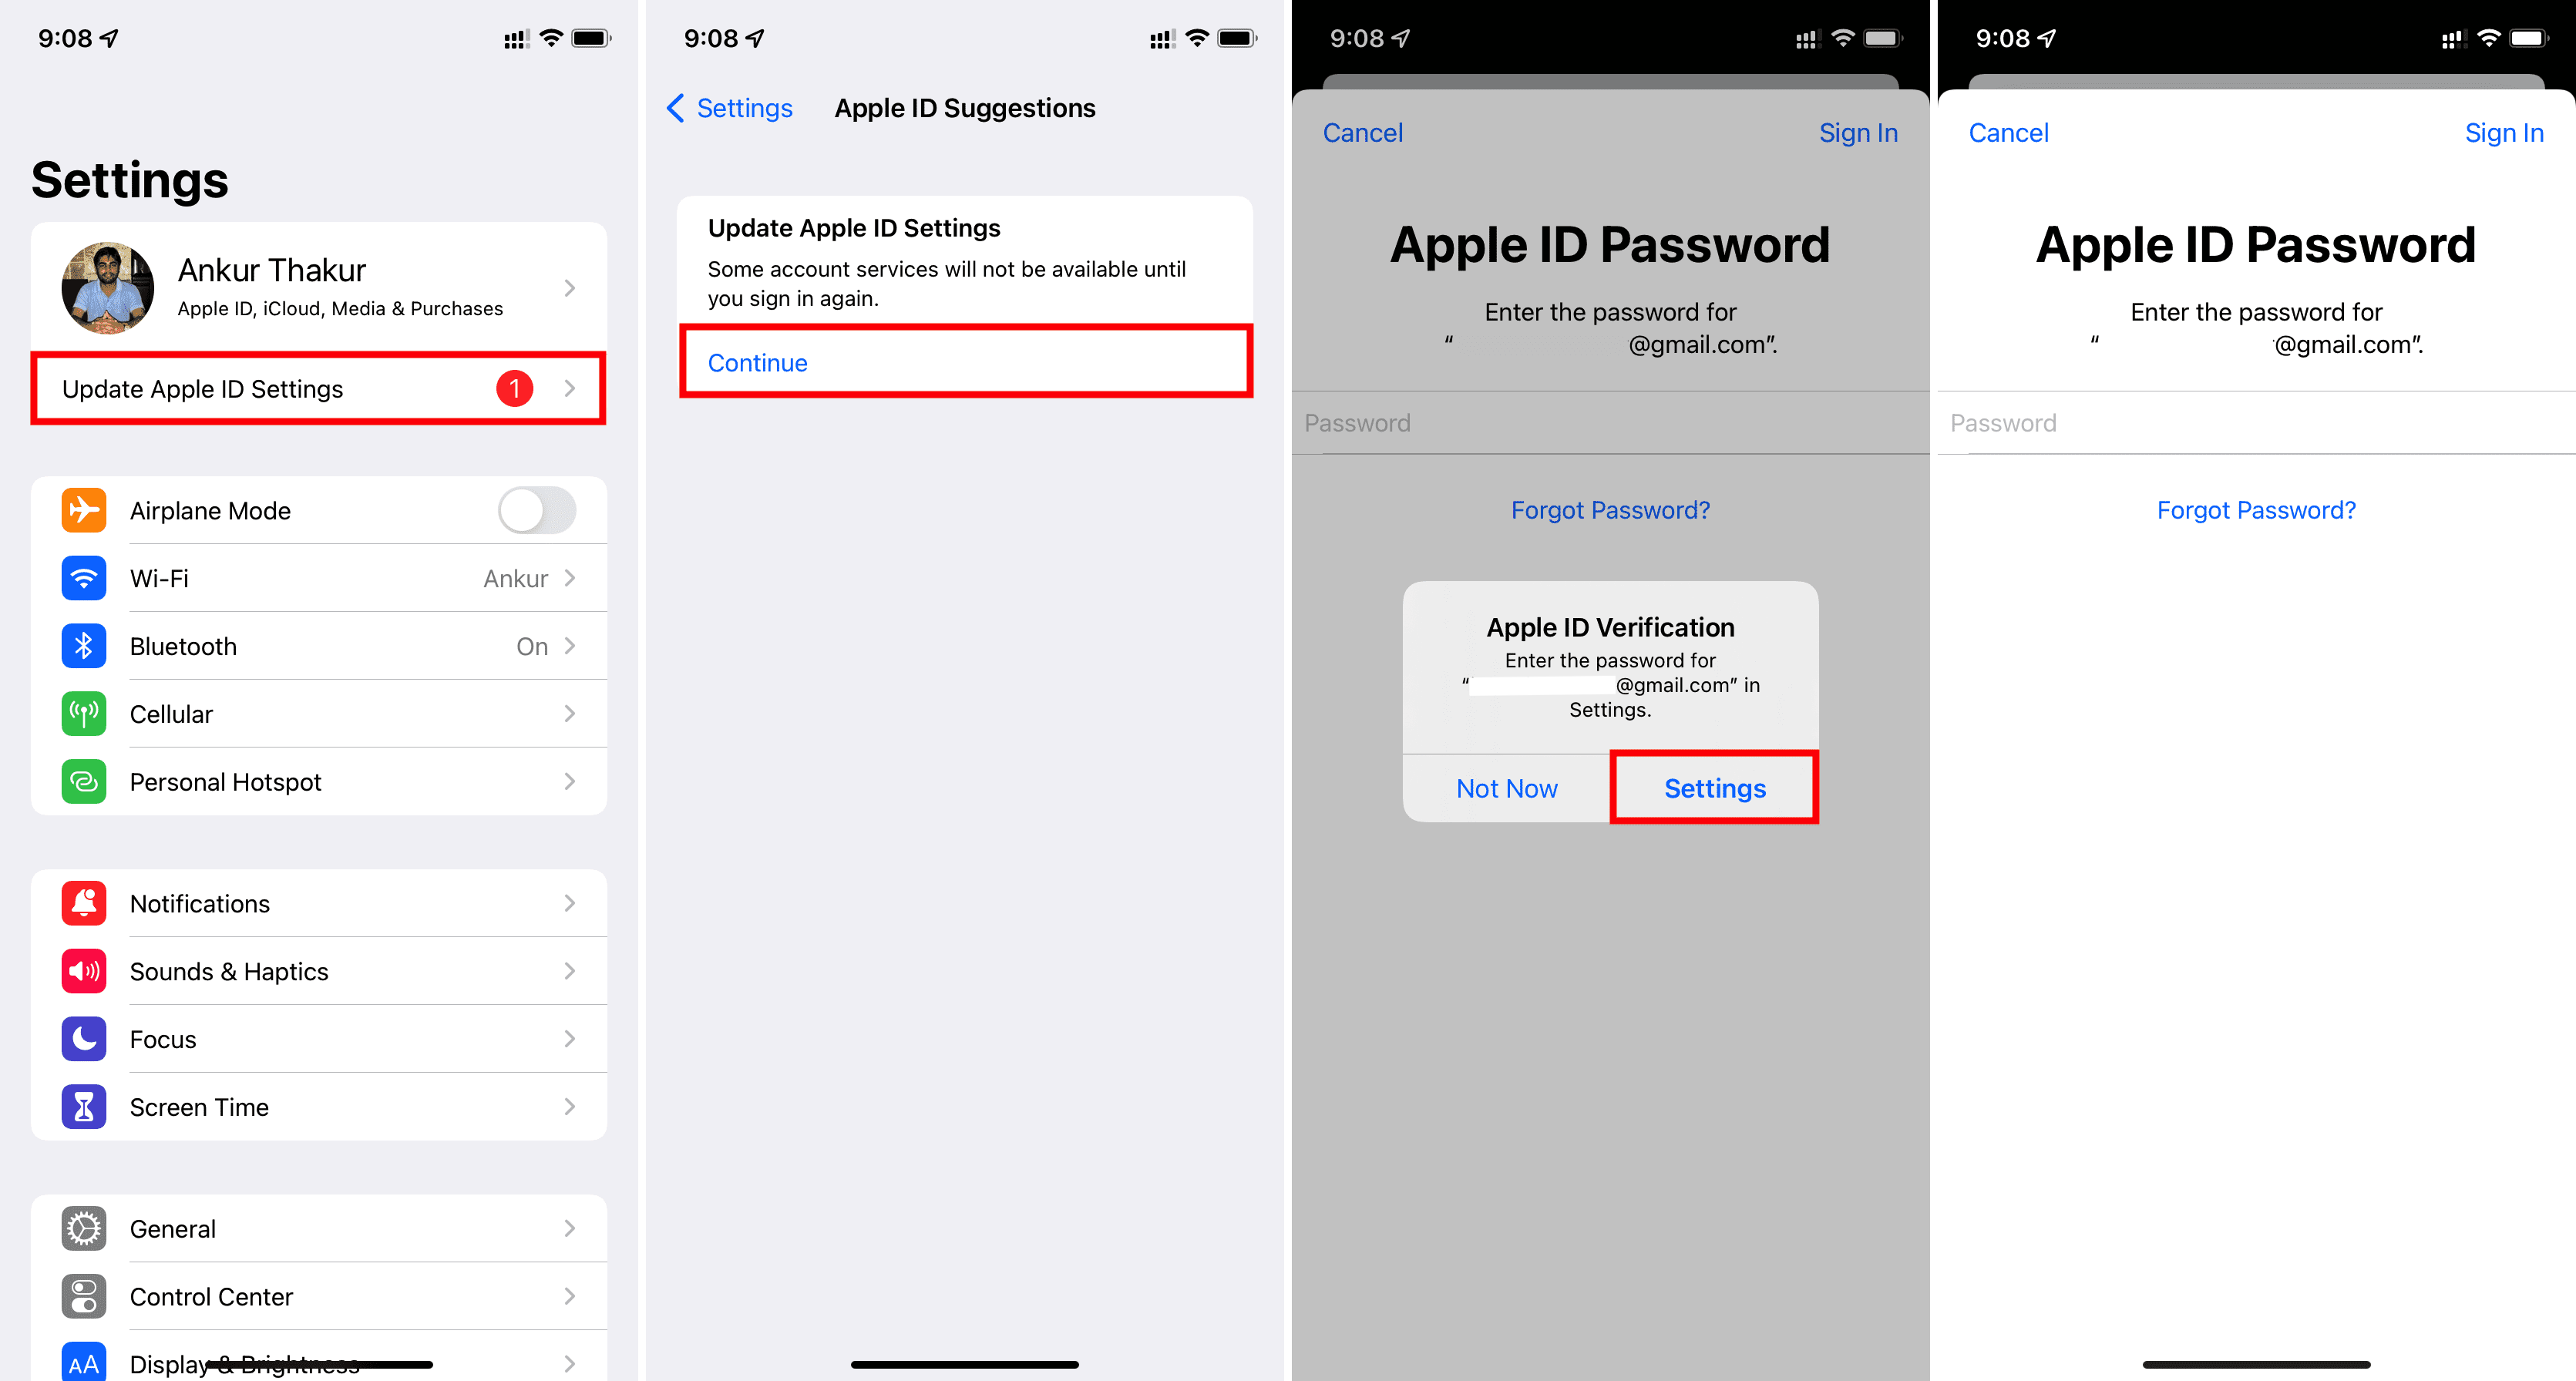 Update Apple ID Settings on iPhone